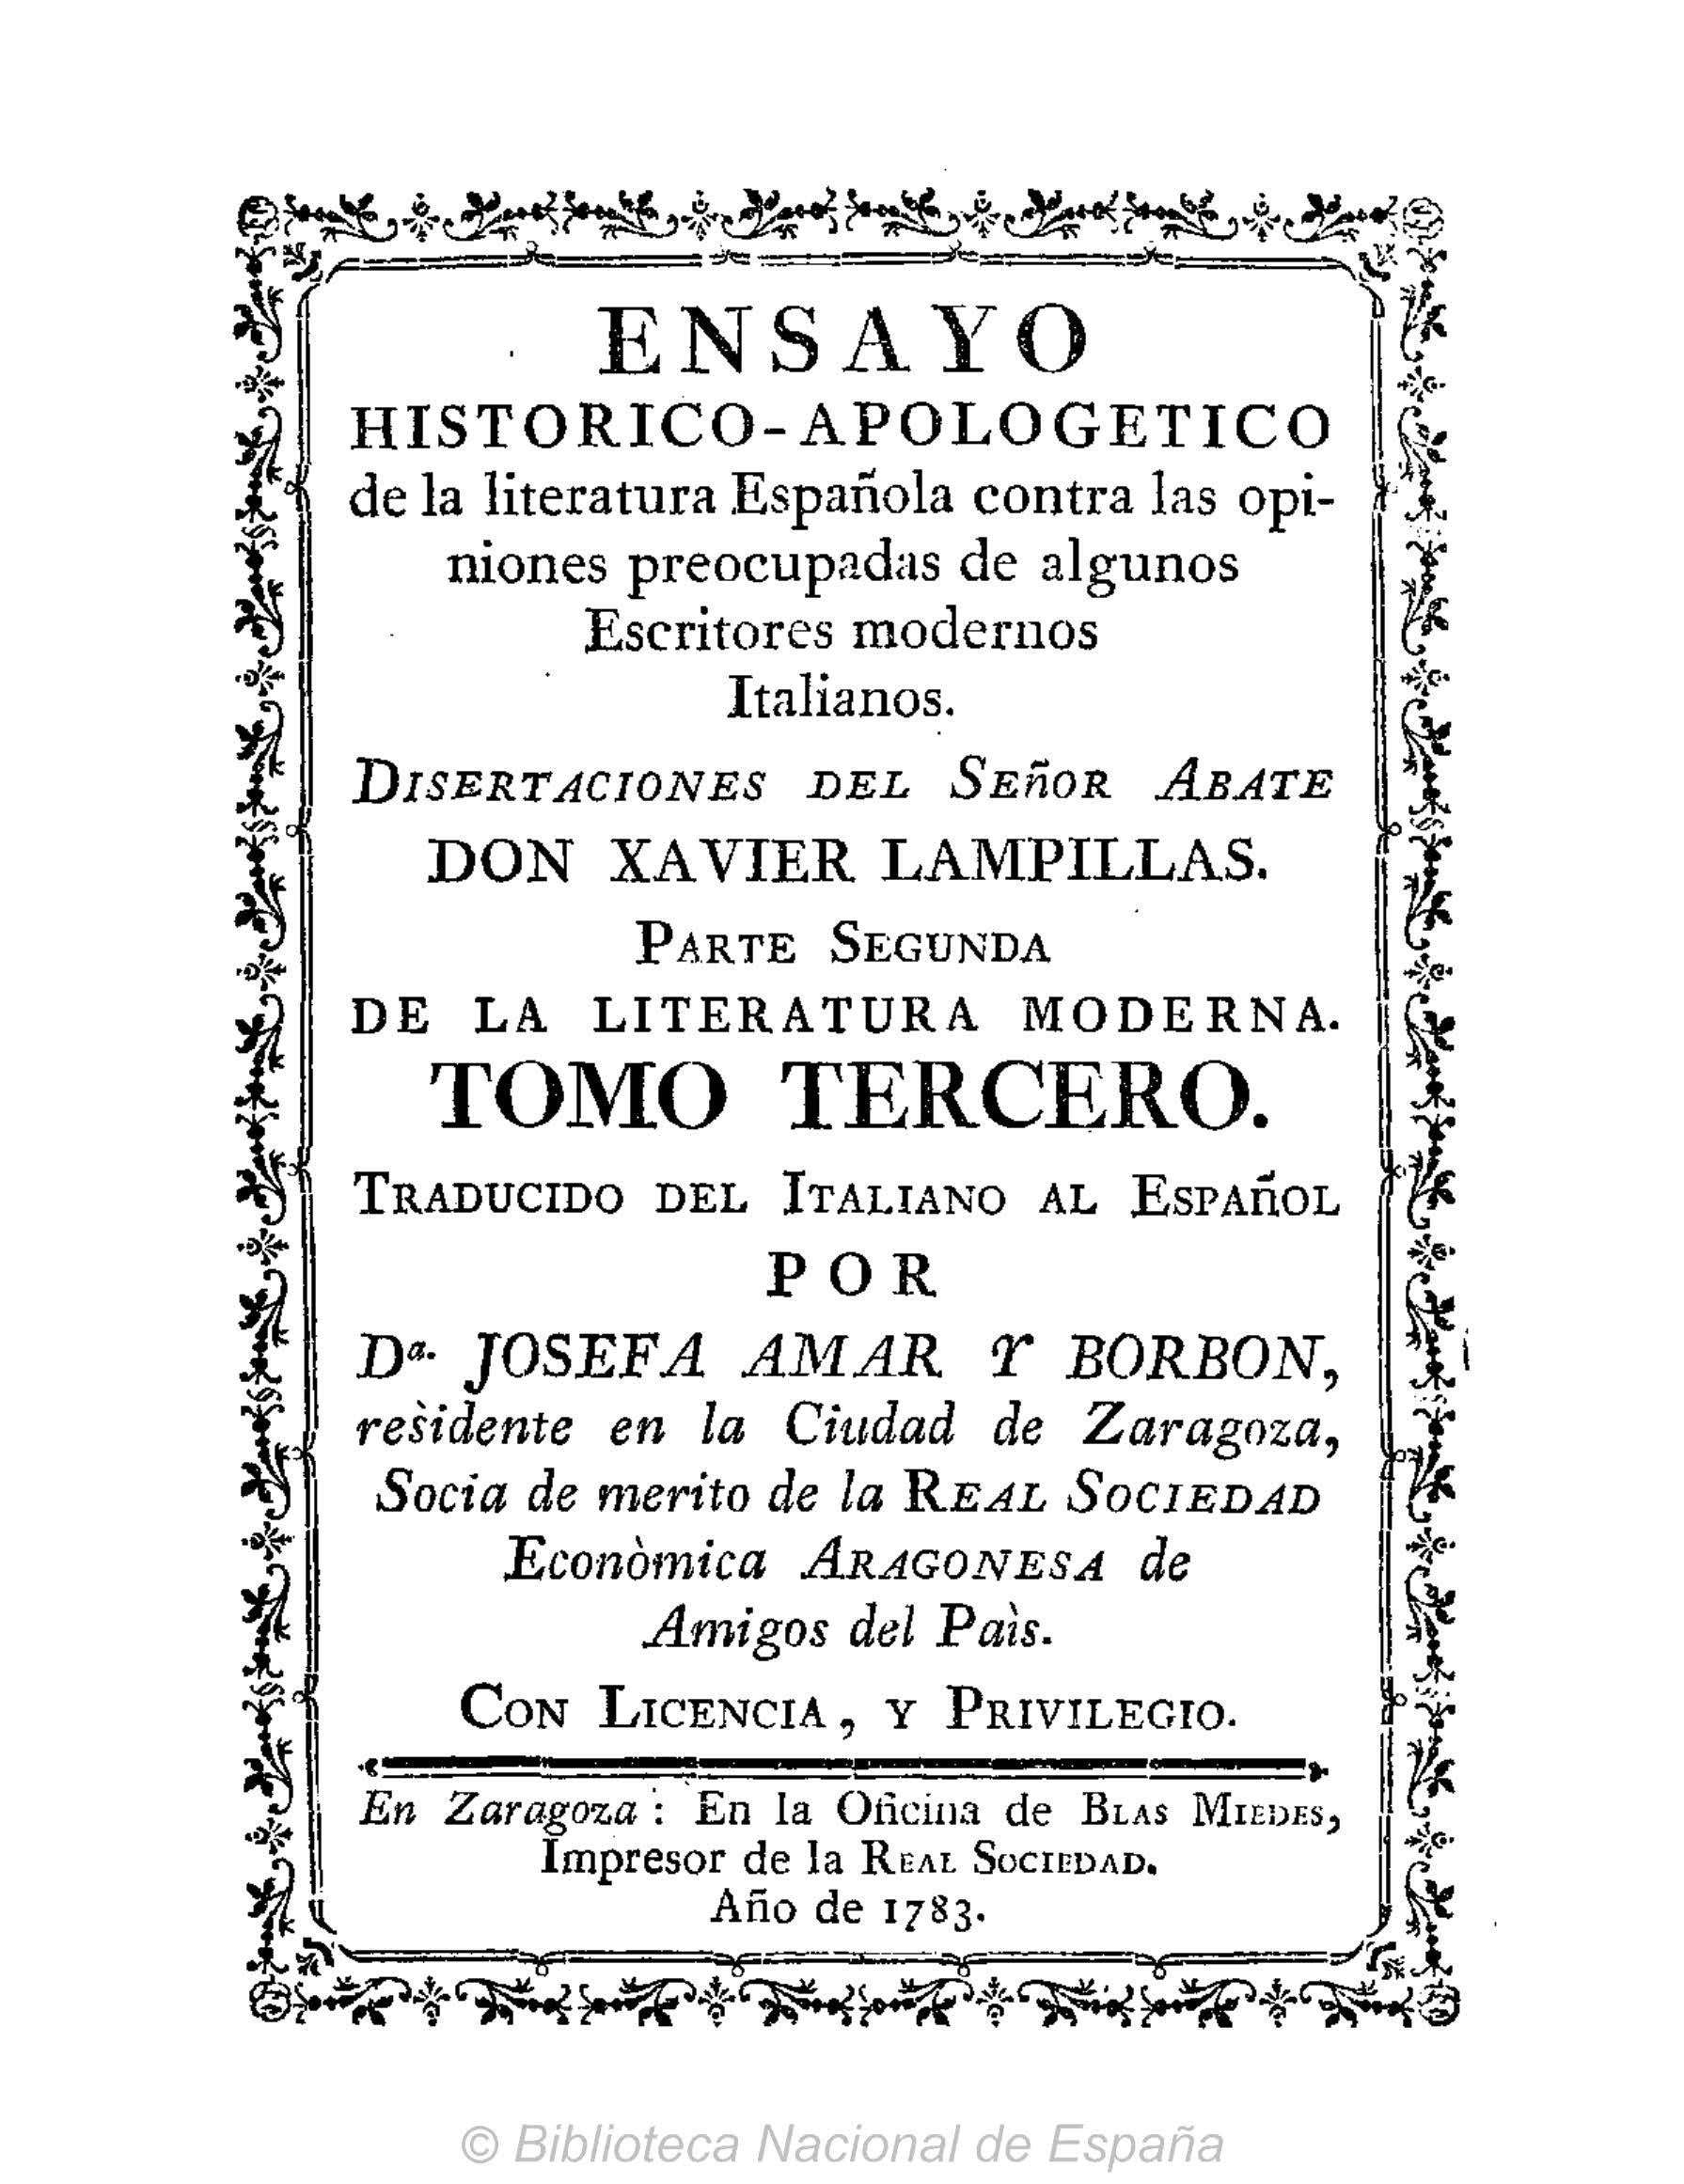 Ensayo histórico-apologético de la literatura española contra las opiniones de algunos escritores modernos italianos, Parte II, Tomo III